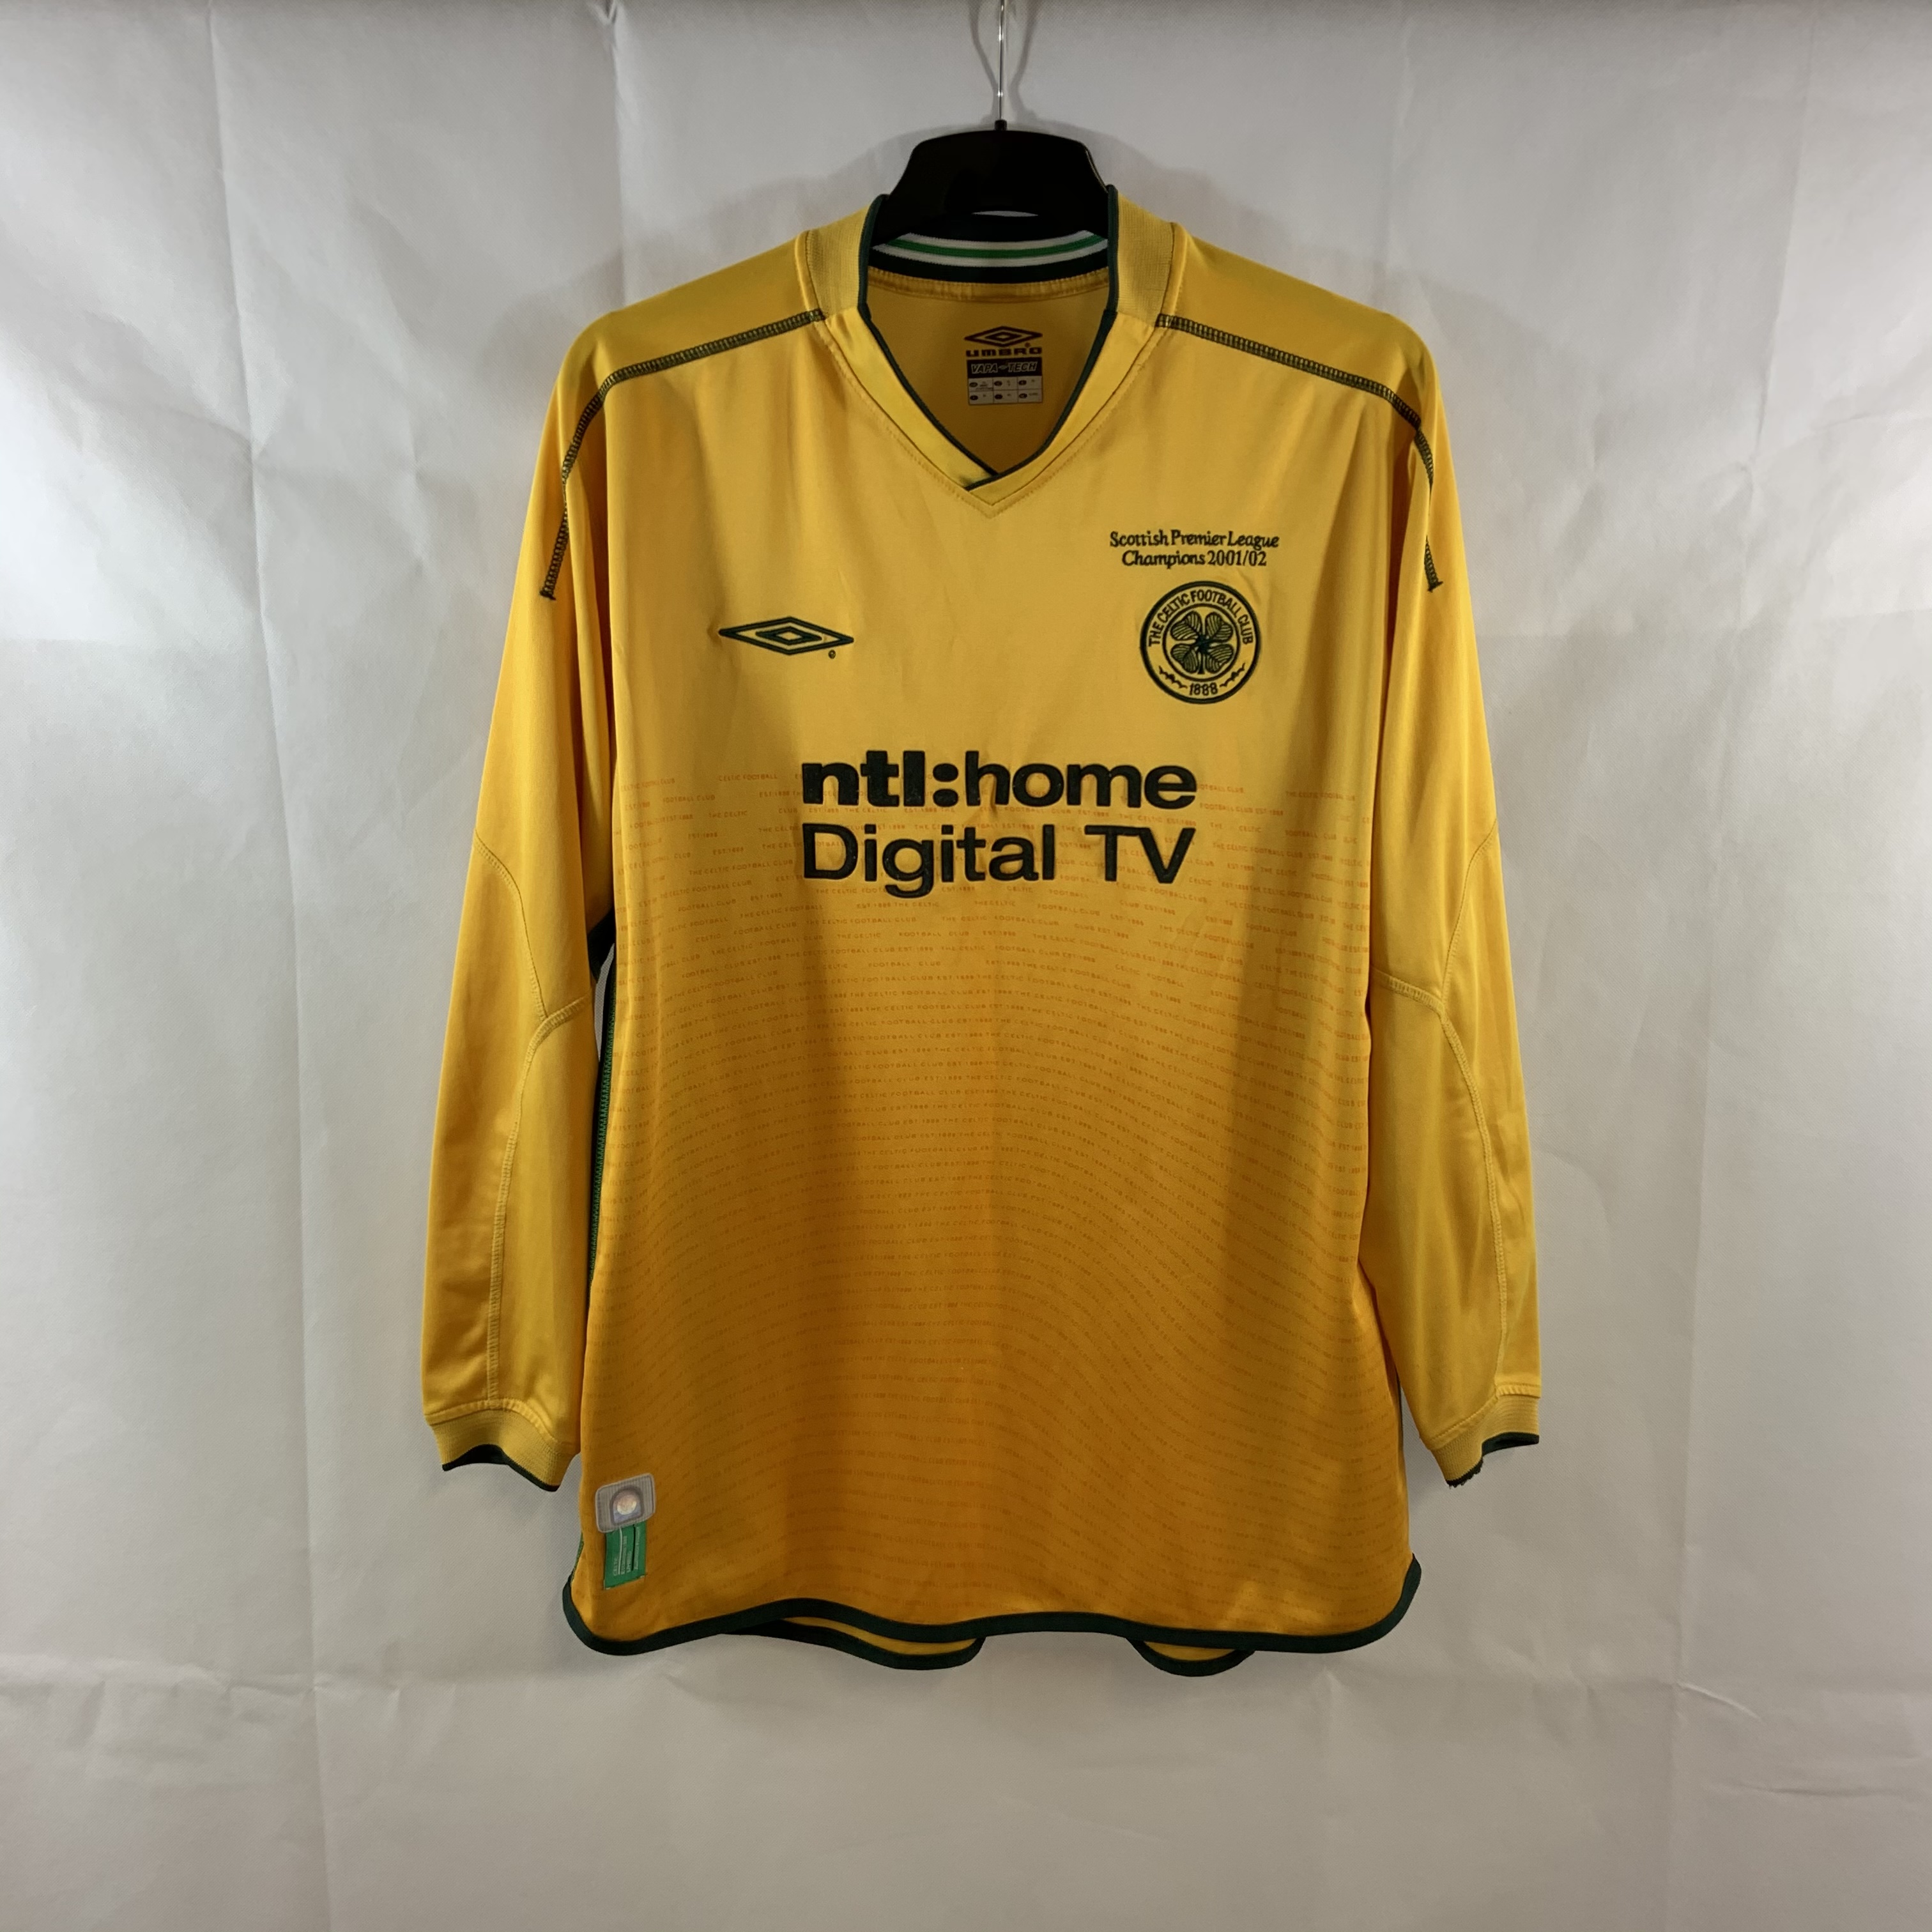 Celtic 2002-03 Home Kit